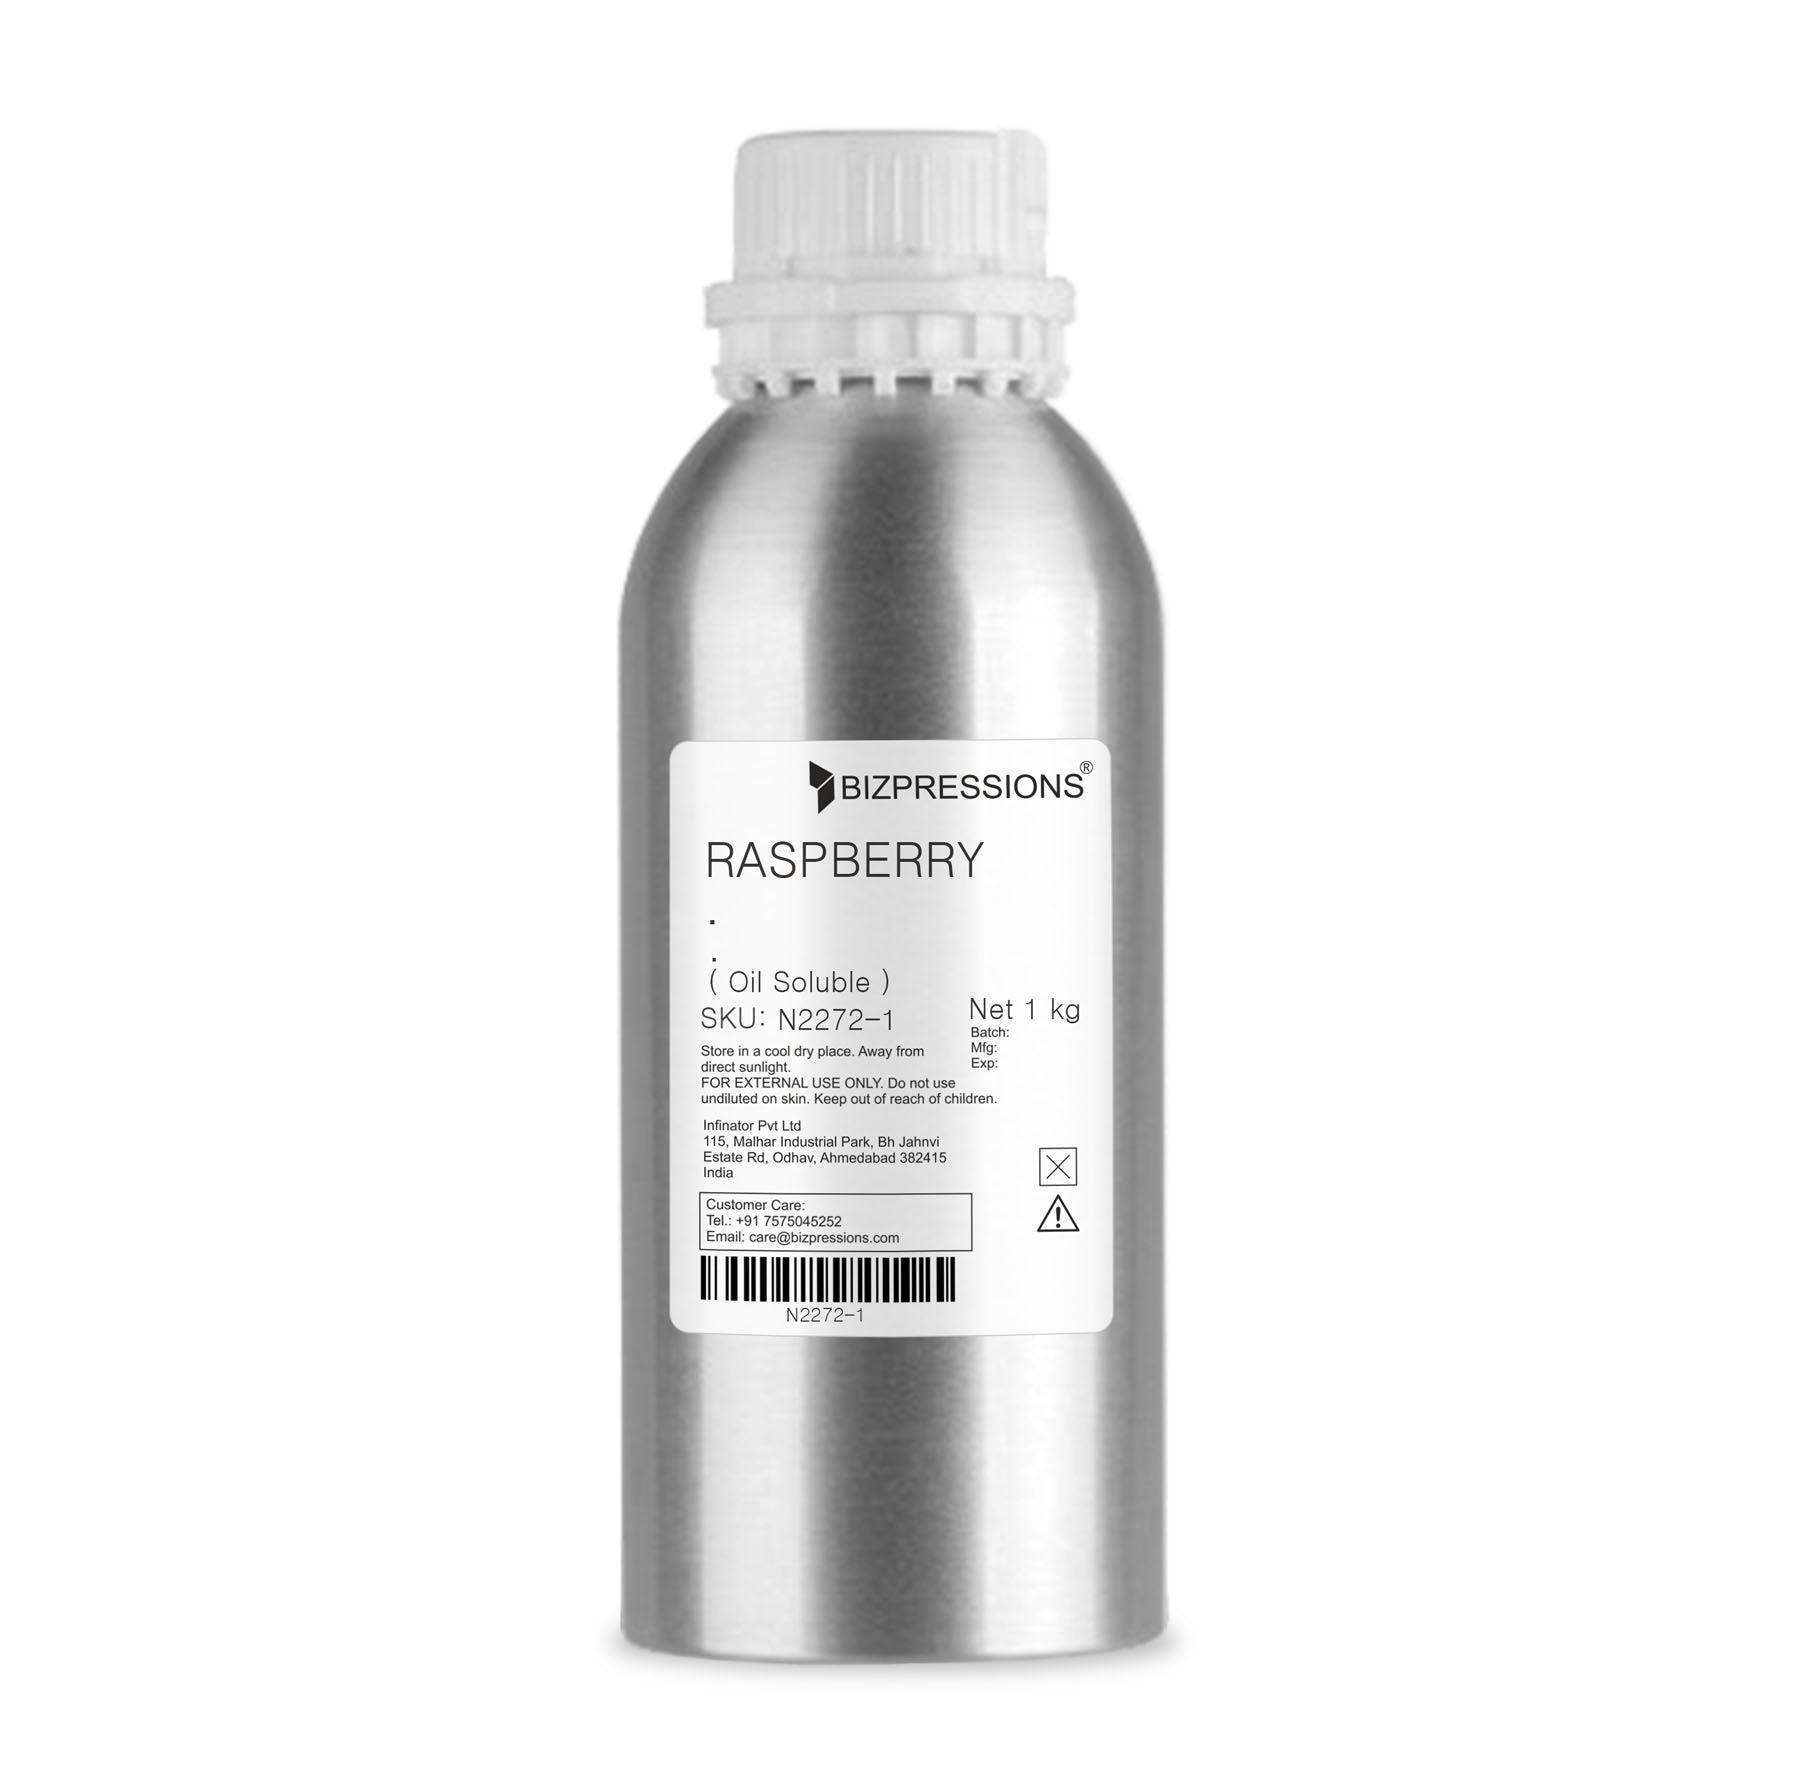 RASPBERRY - Fragrance ( Oil Soluble ) - 1 kg